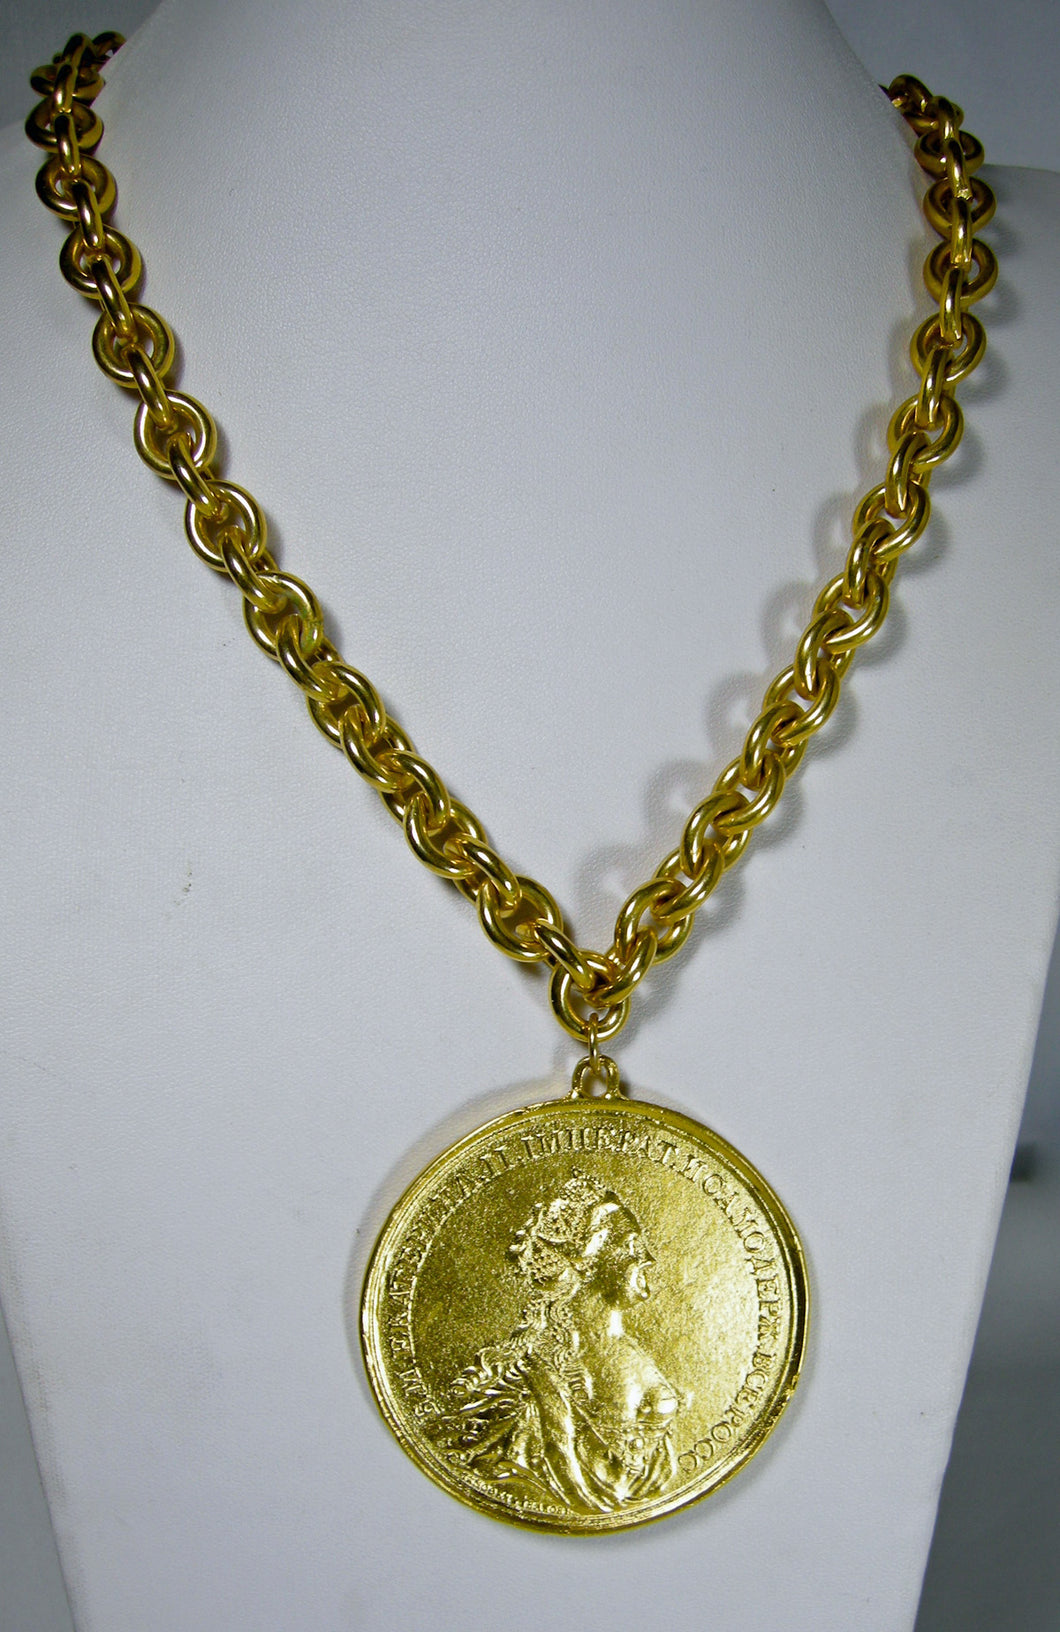 Yves Saint Laurent Key Pendant Necklace